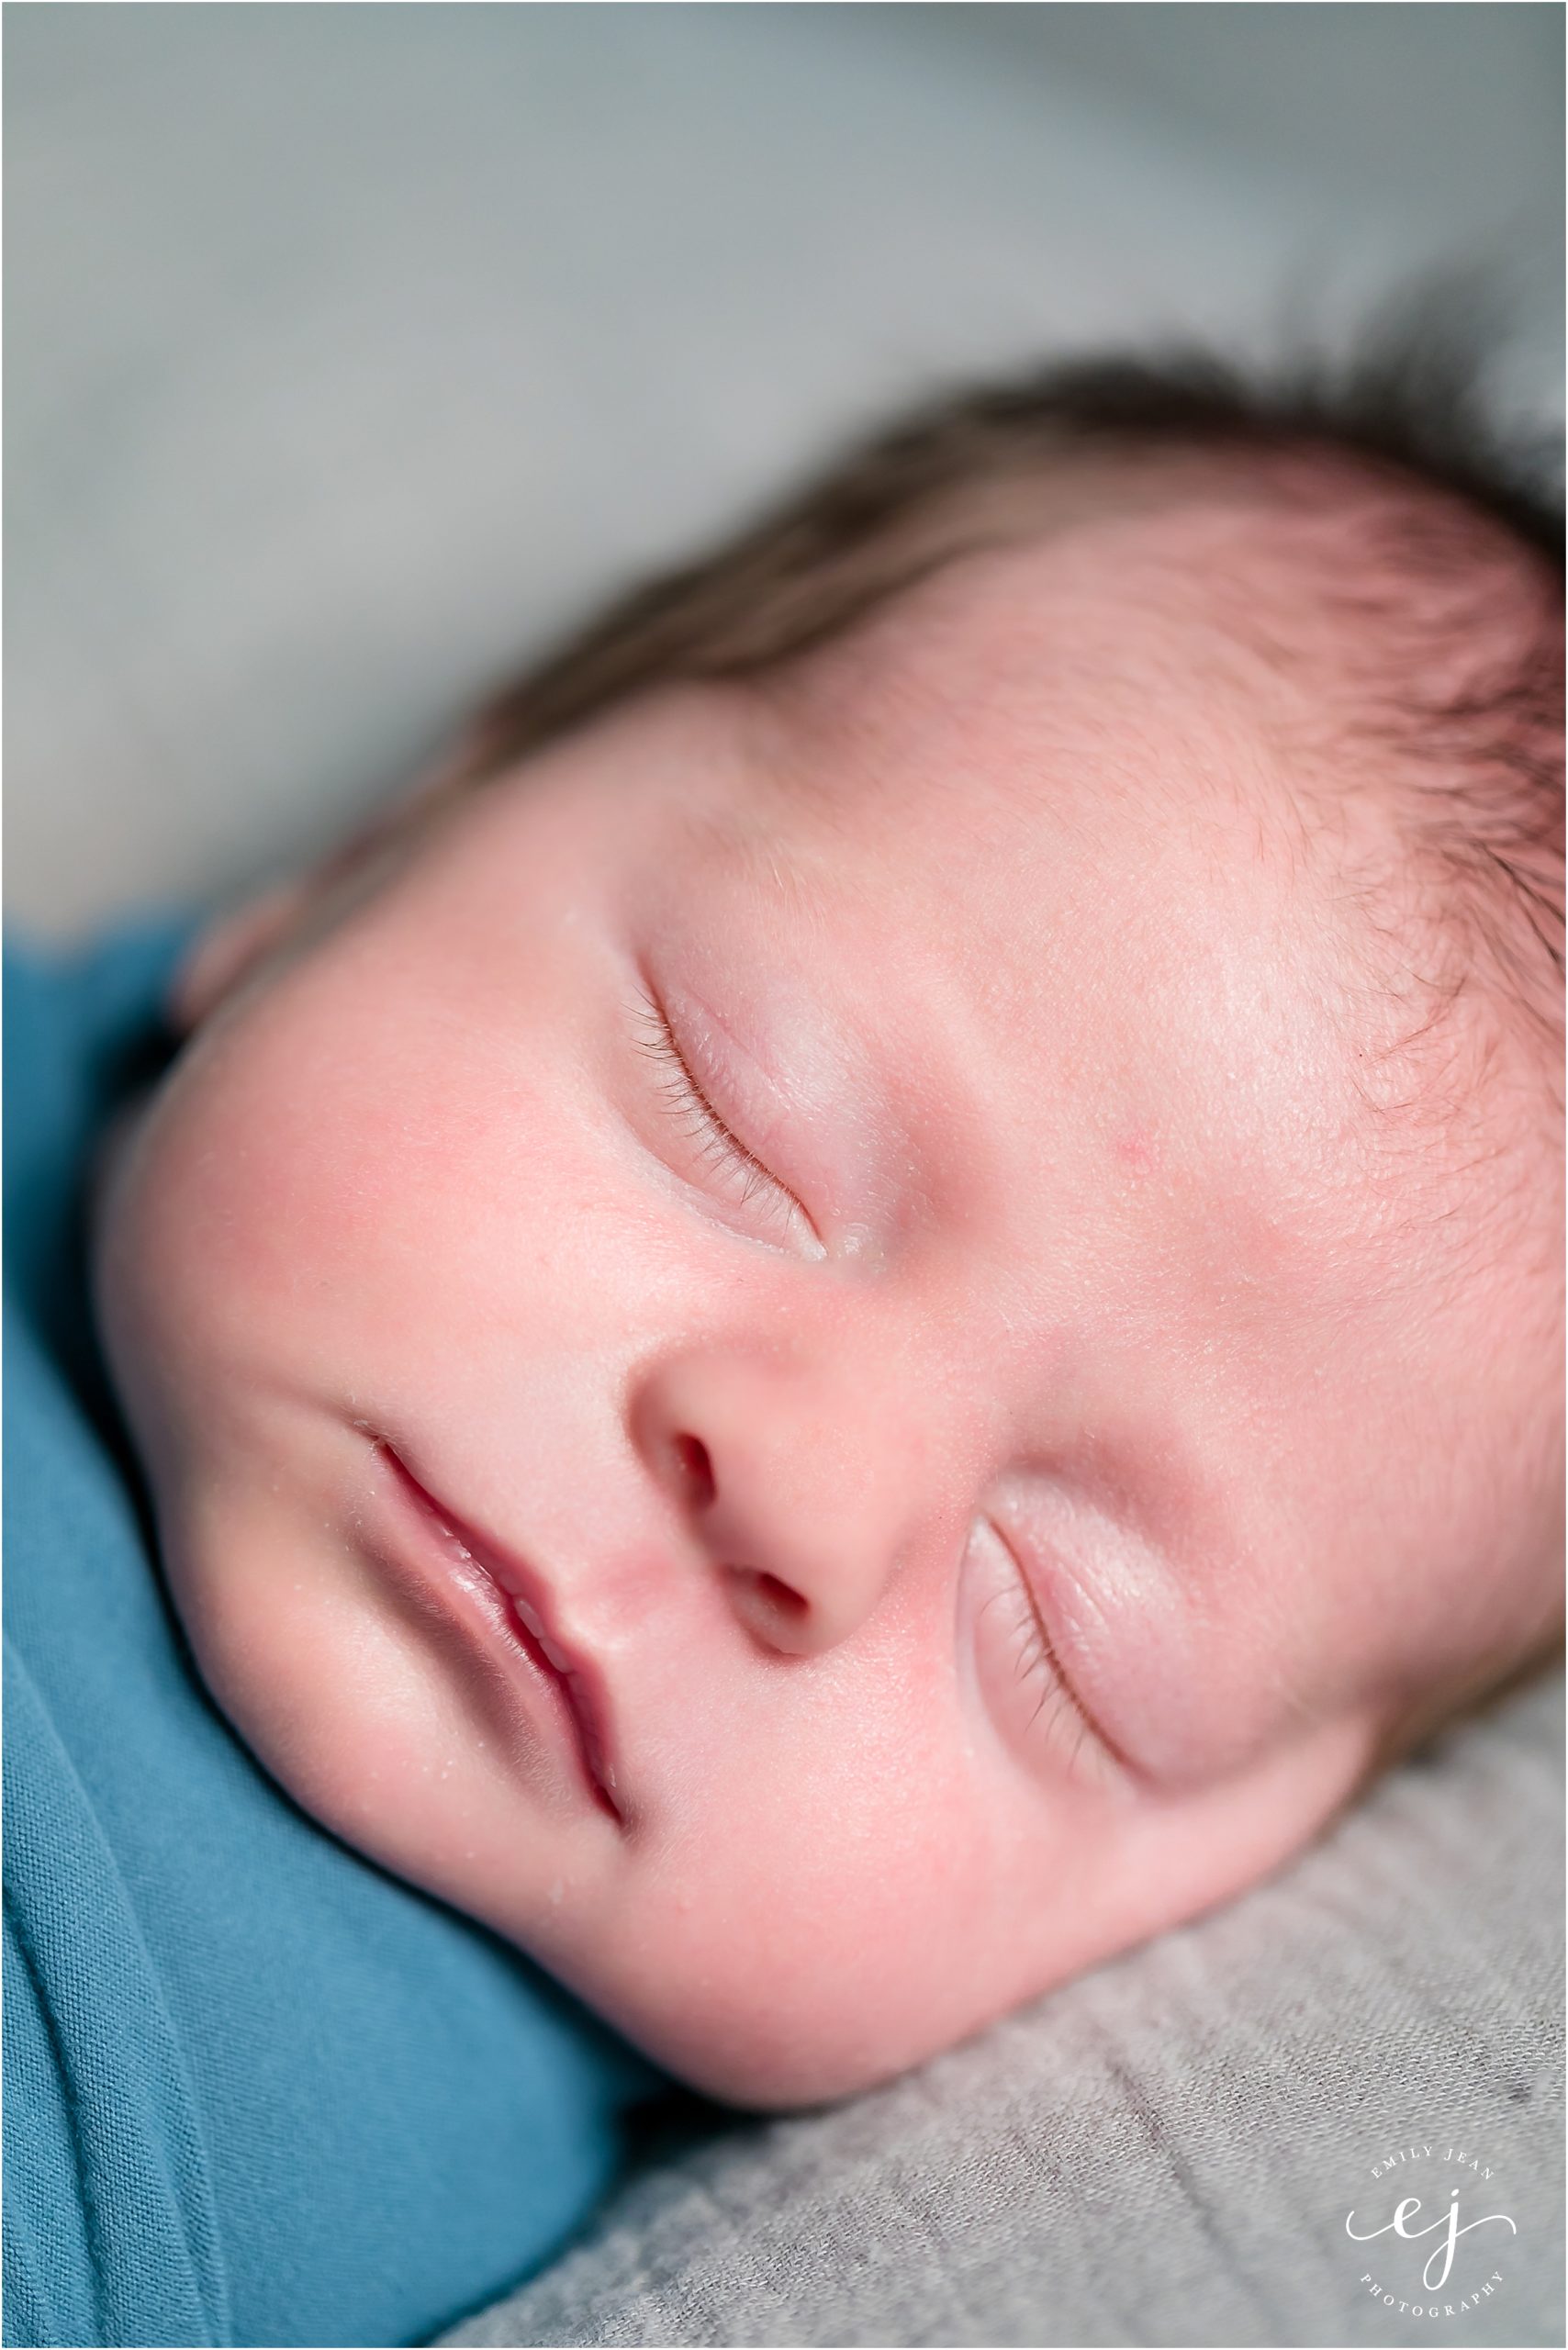 la crosse wisconsin family photo newborn baby boy swaddled in blue